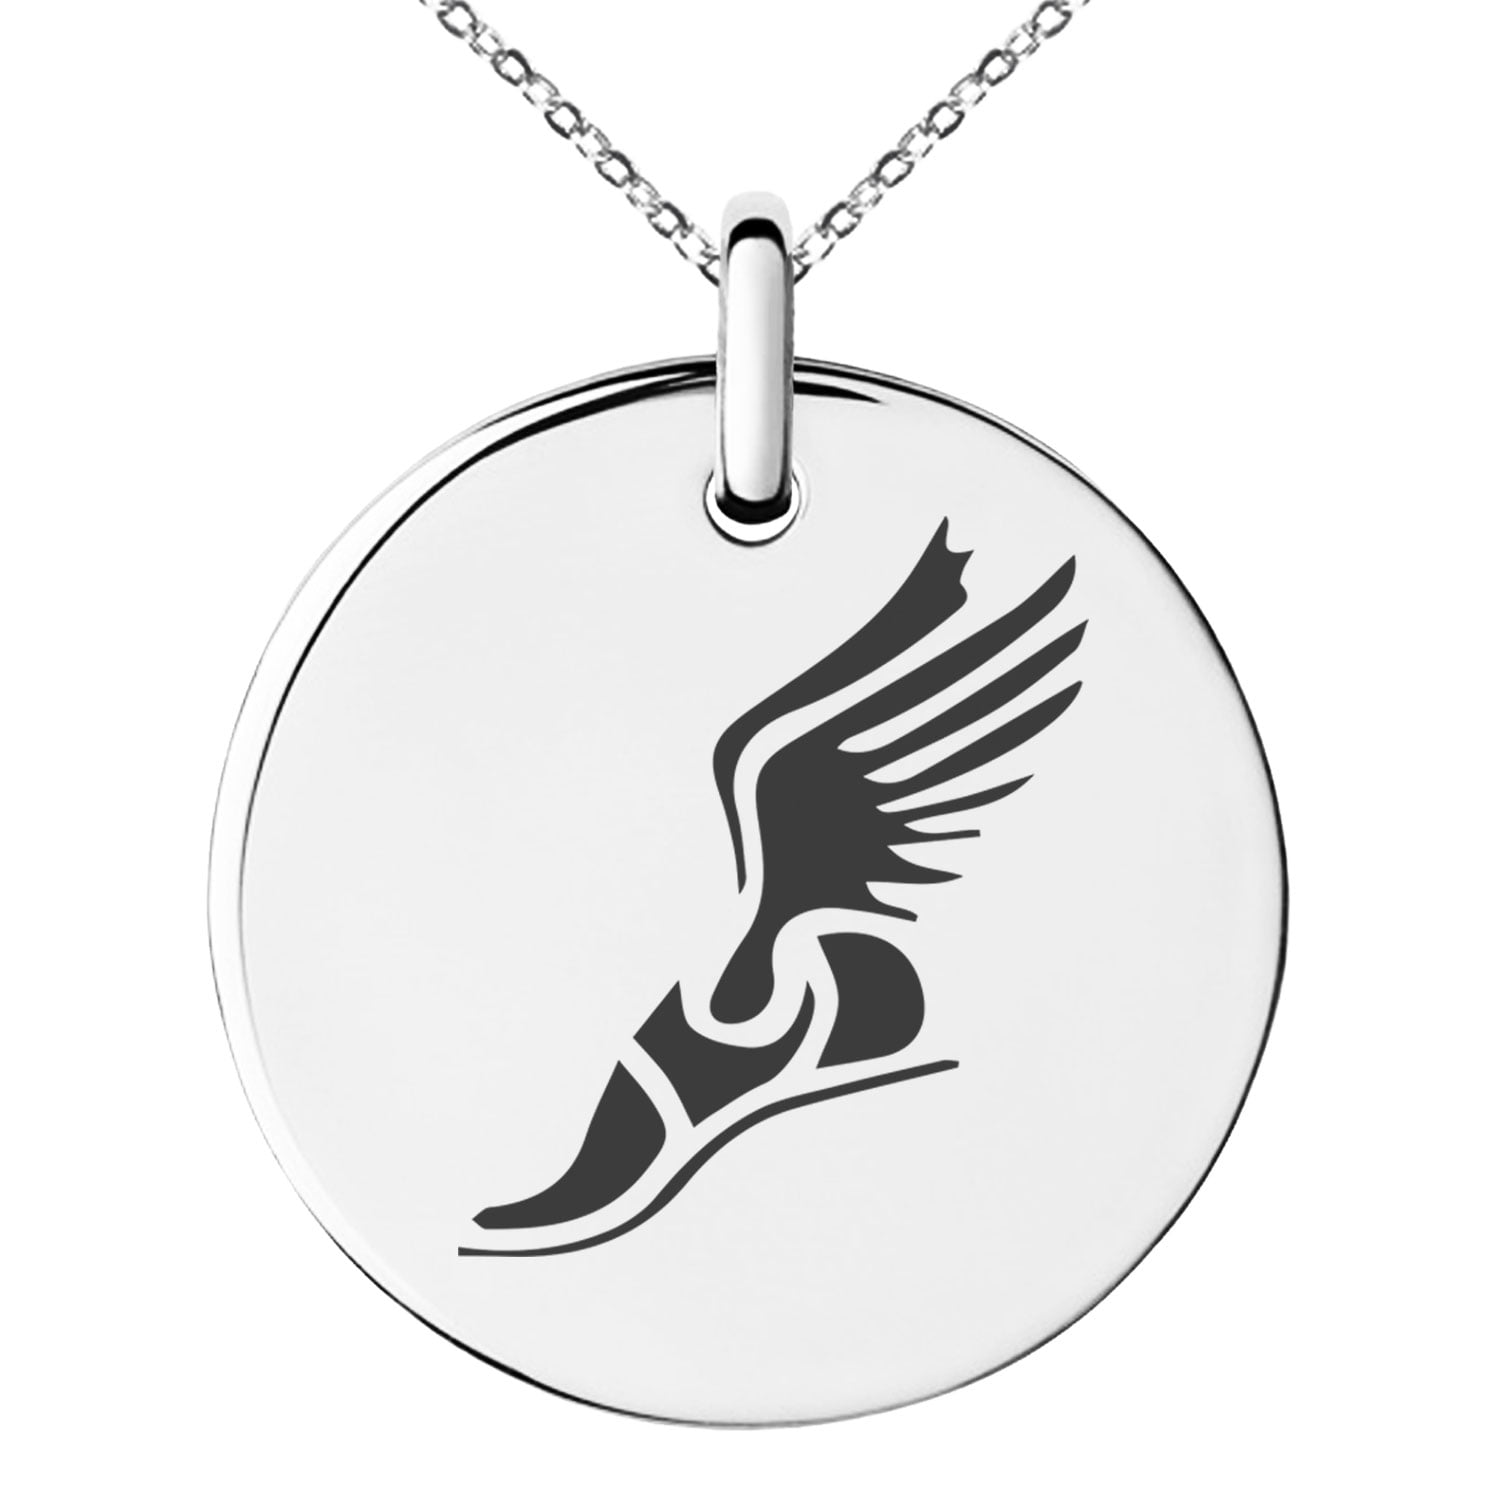 Stainless Steel Hermes Greek Messenger of Gods Engraved Small Medallion Circle Charm Pendant